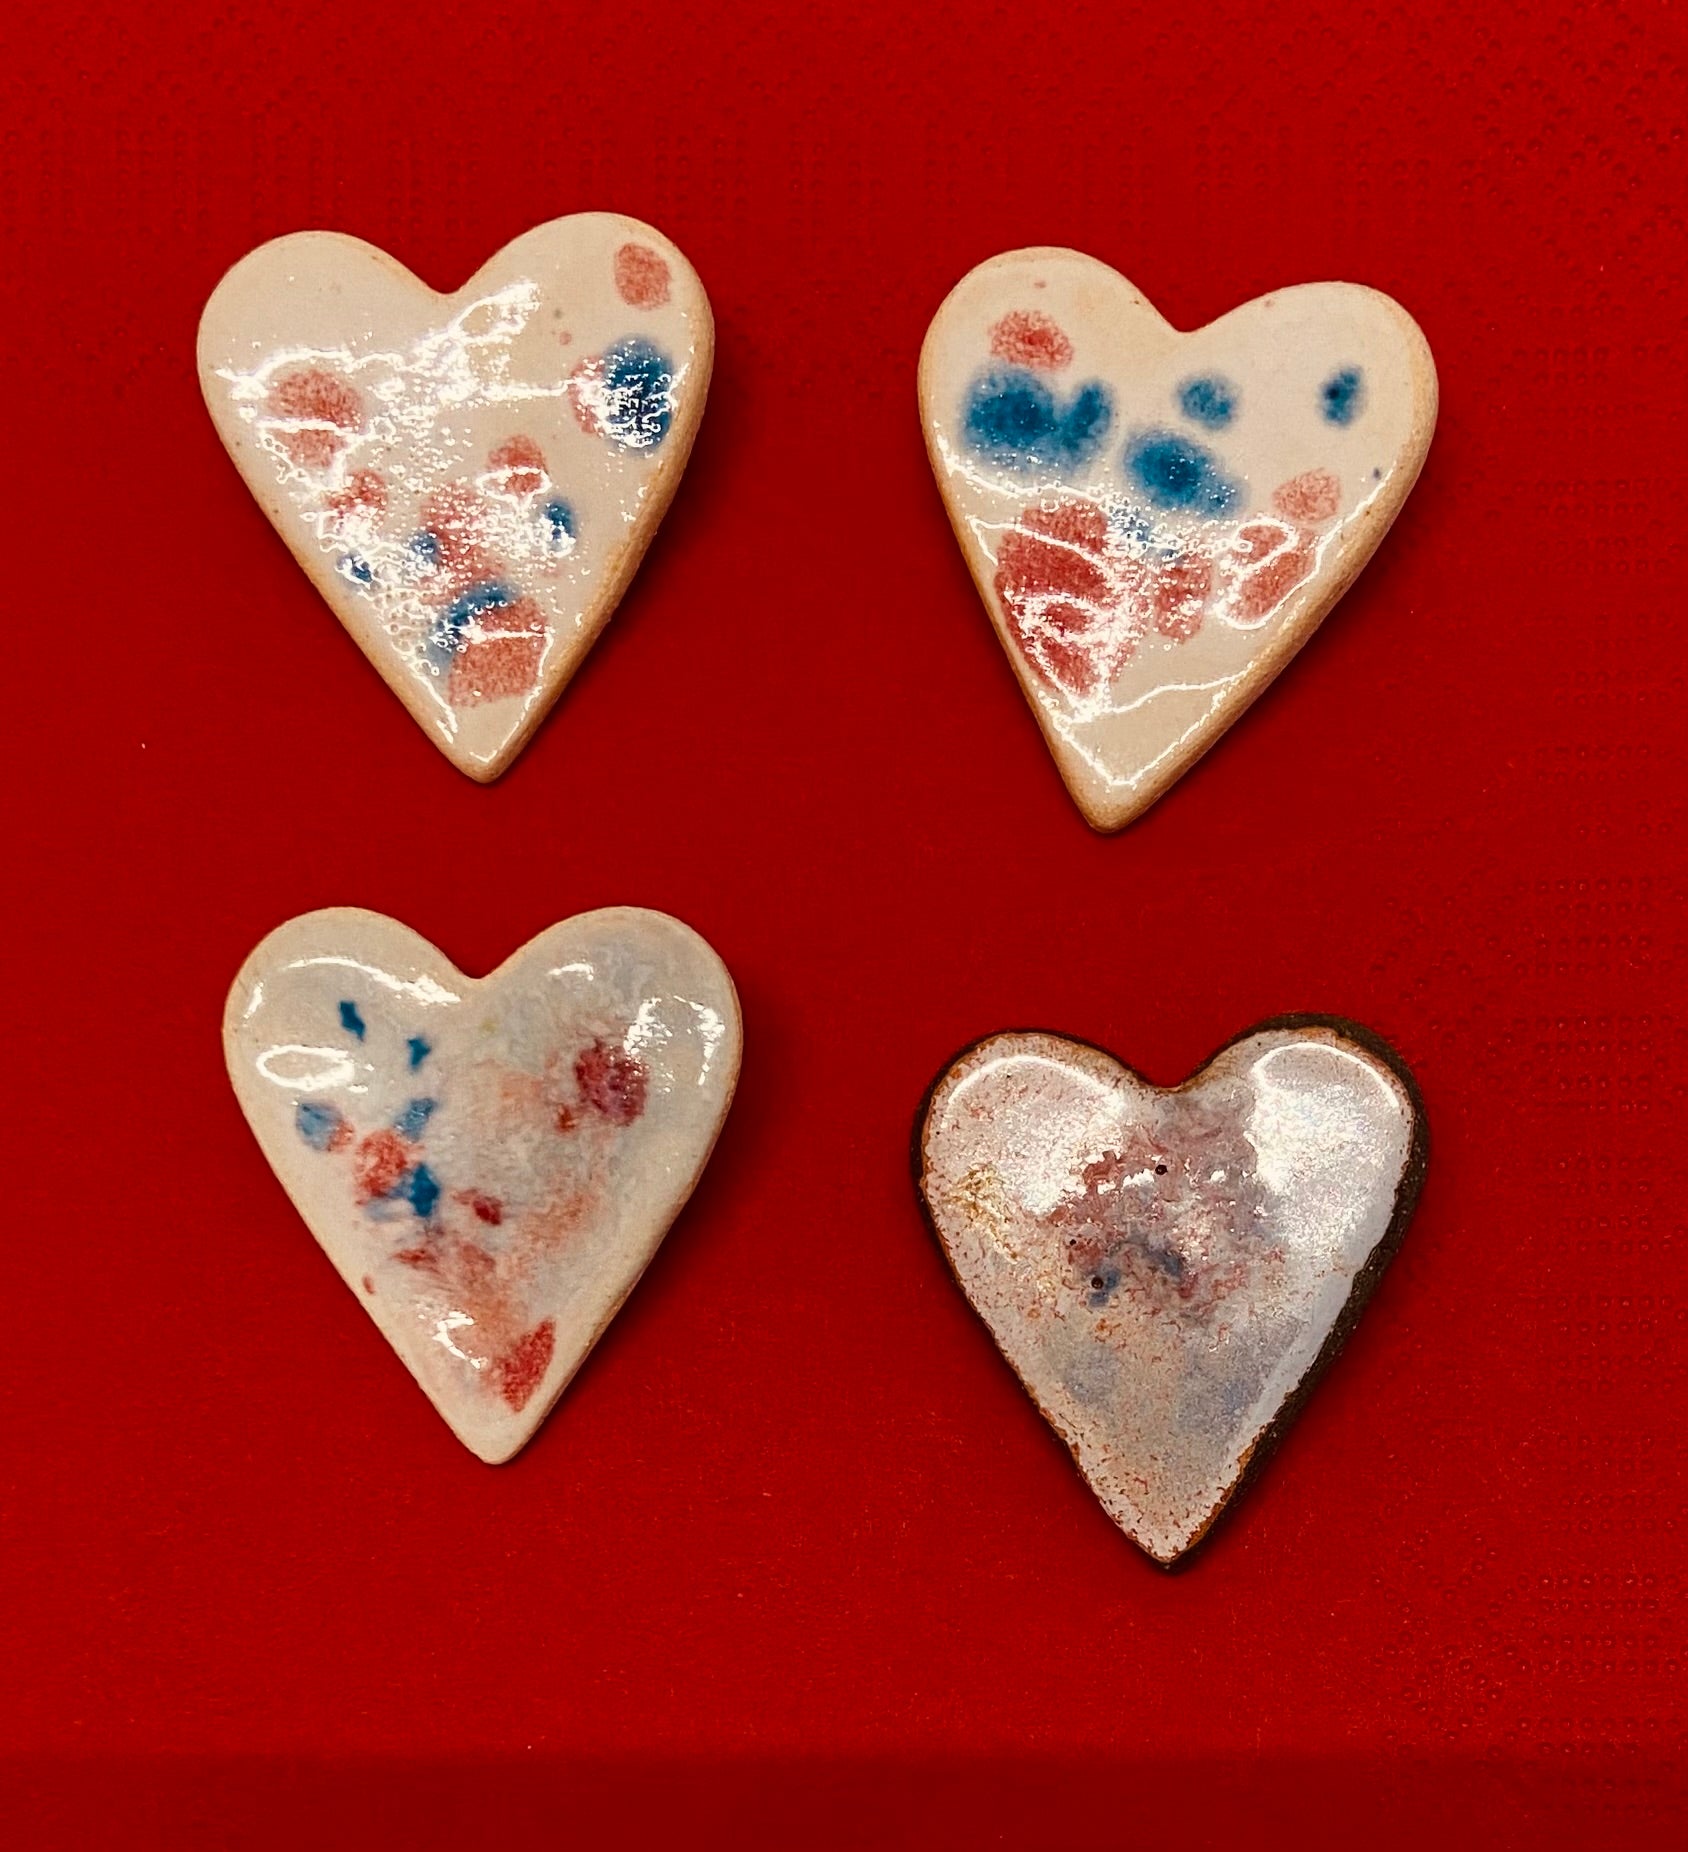 LILIANA BASARAB broșe din ceramică inimă, lună sau Memento mori